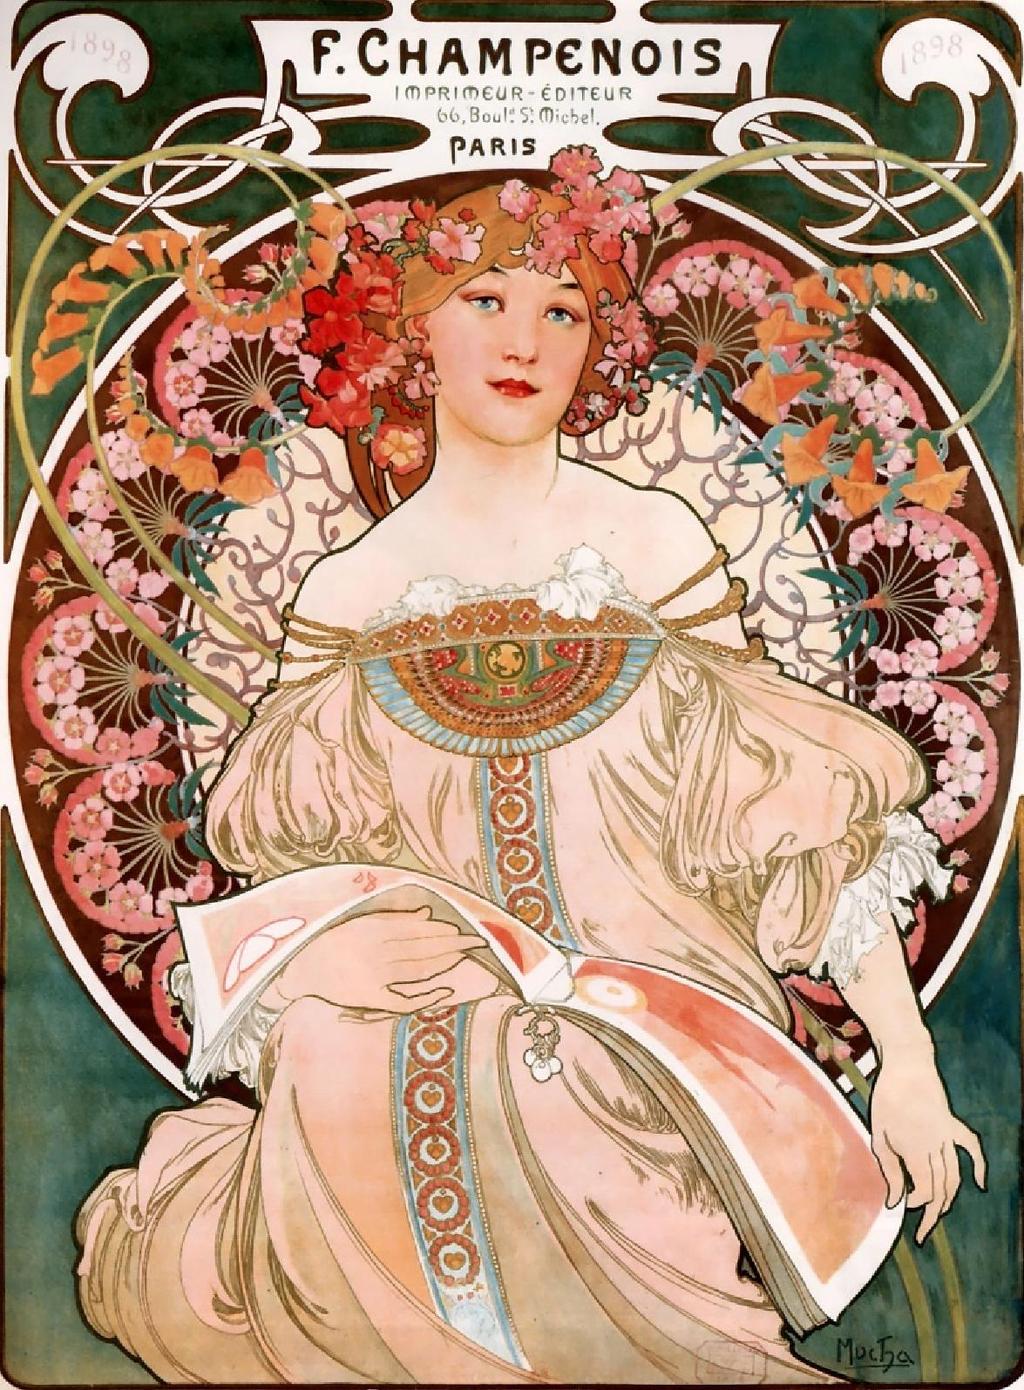 Na prijelazu stoljeća plakat dobiva zamah u razdoblju jugendstila, odnosno secesije; istaknuti predstavnici su Čeh Alphonse Mucha, Austrijanac Gustav Klimt i Englez William Morris.